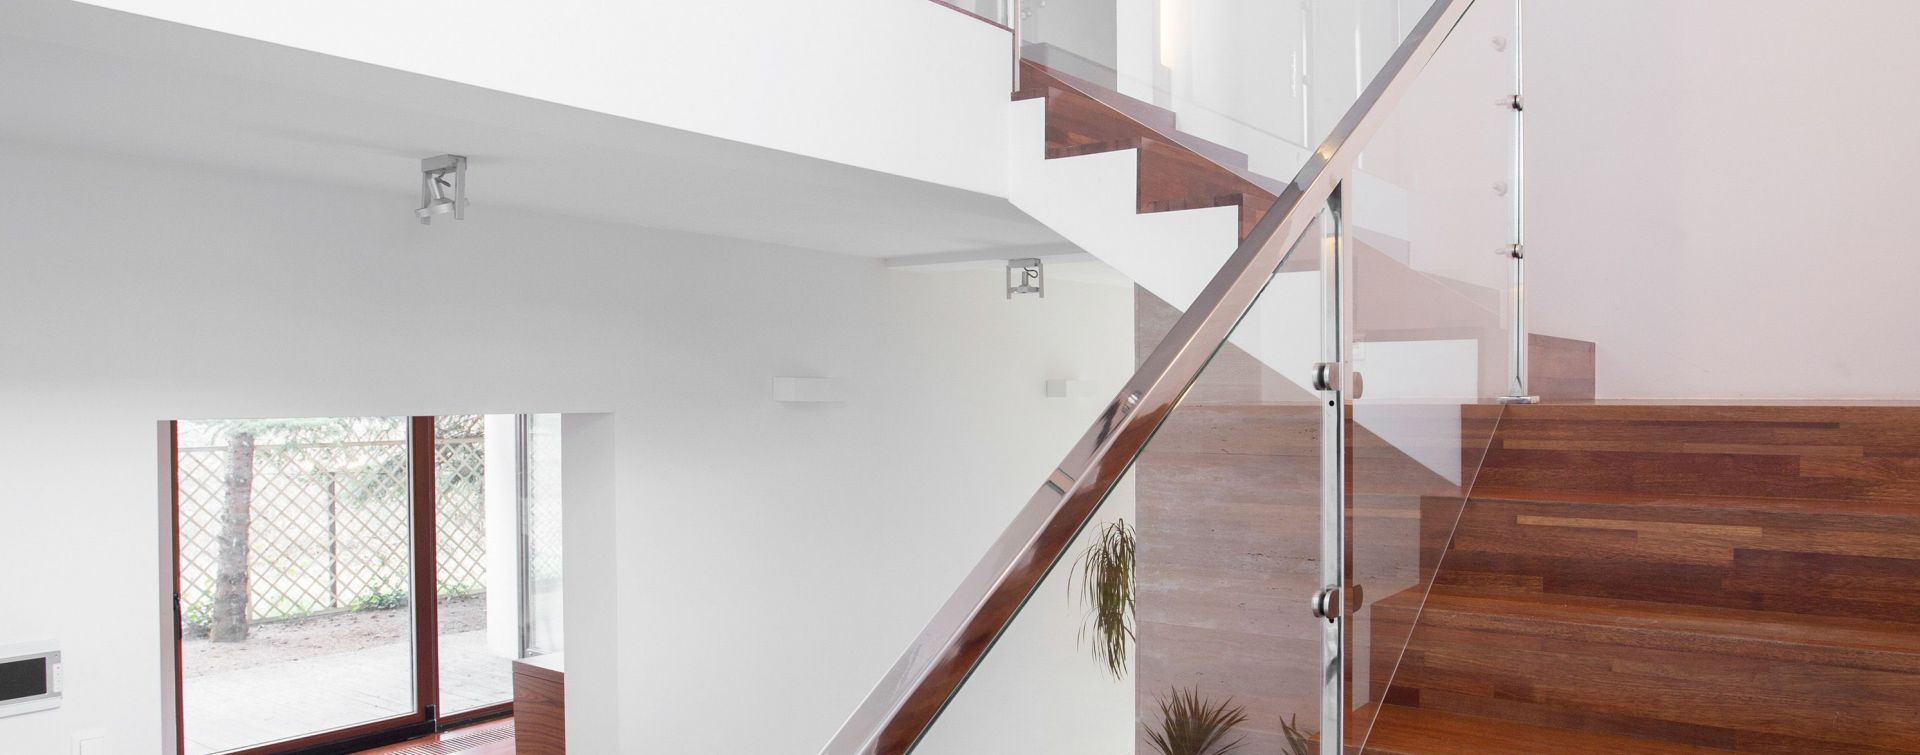 Moderne Treppe in einem Haus